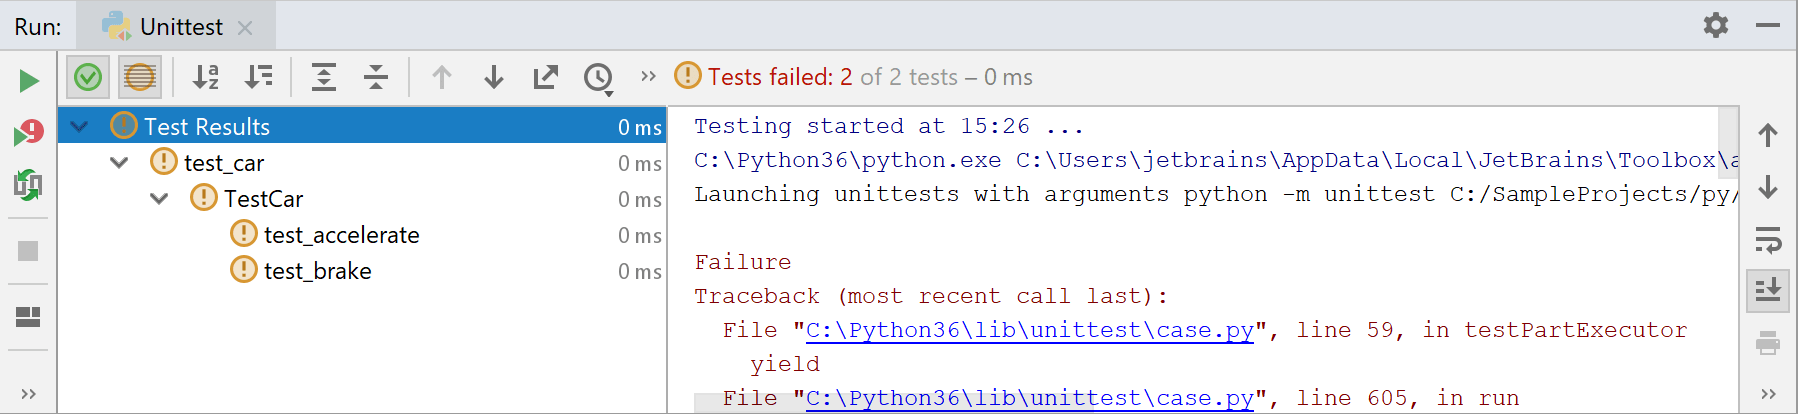 Failed test